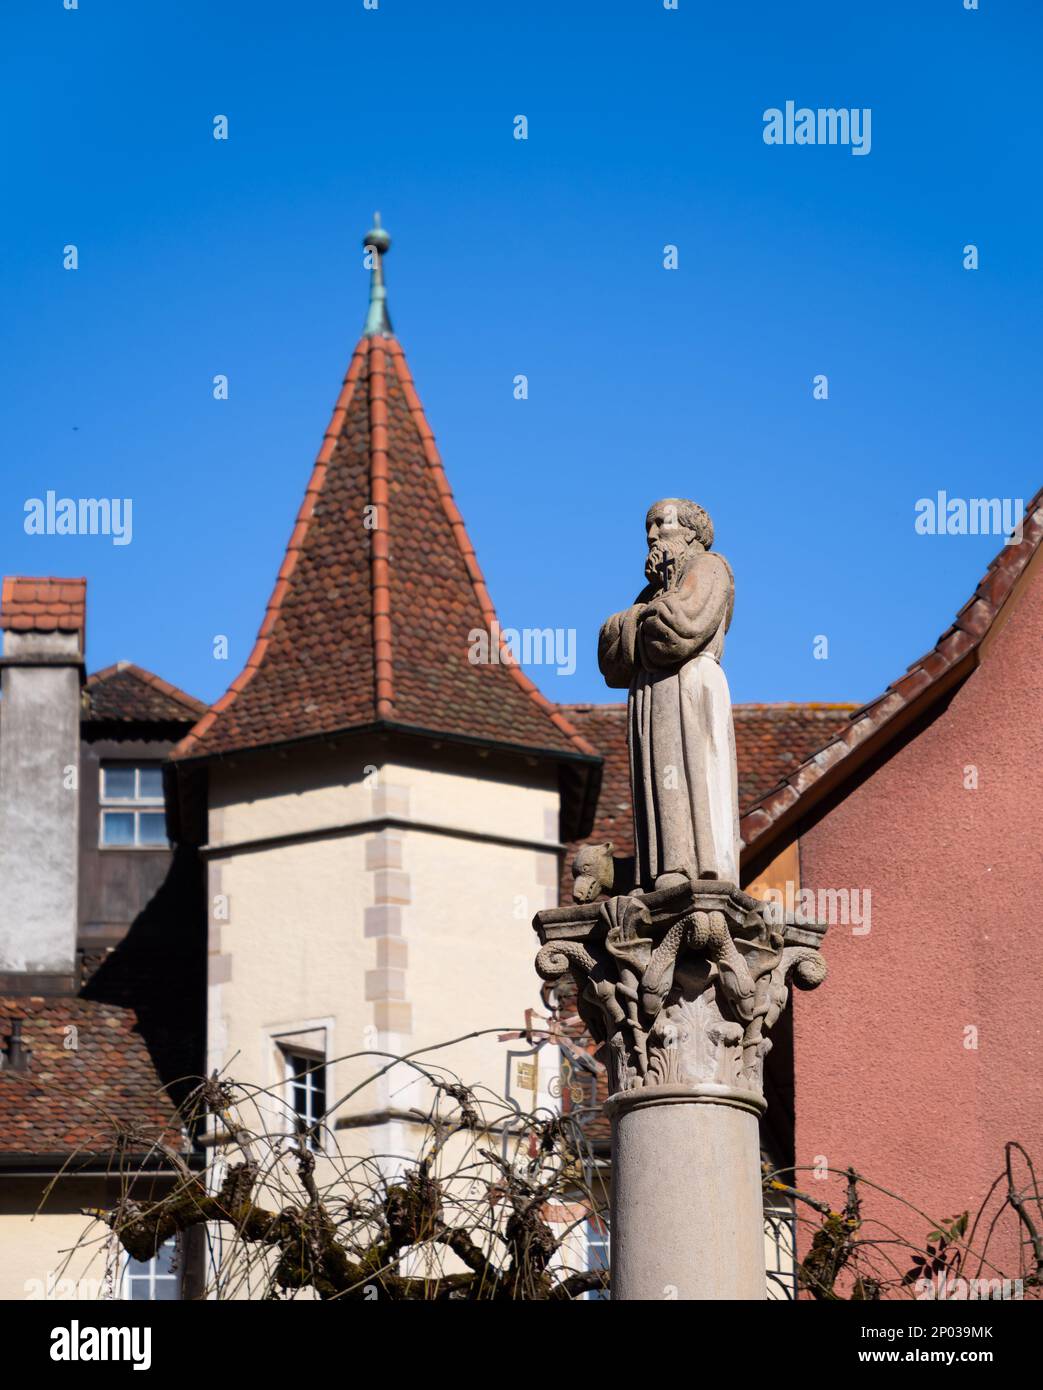 Saint-Ursanne, Suisse - 19 octobre 2021 : statue extérieure de Saint-Ursanne dans un canton suisse du Jura. Banque D'Images